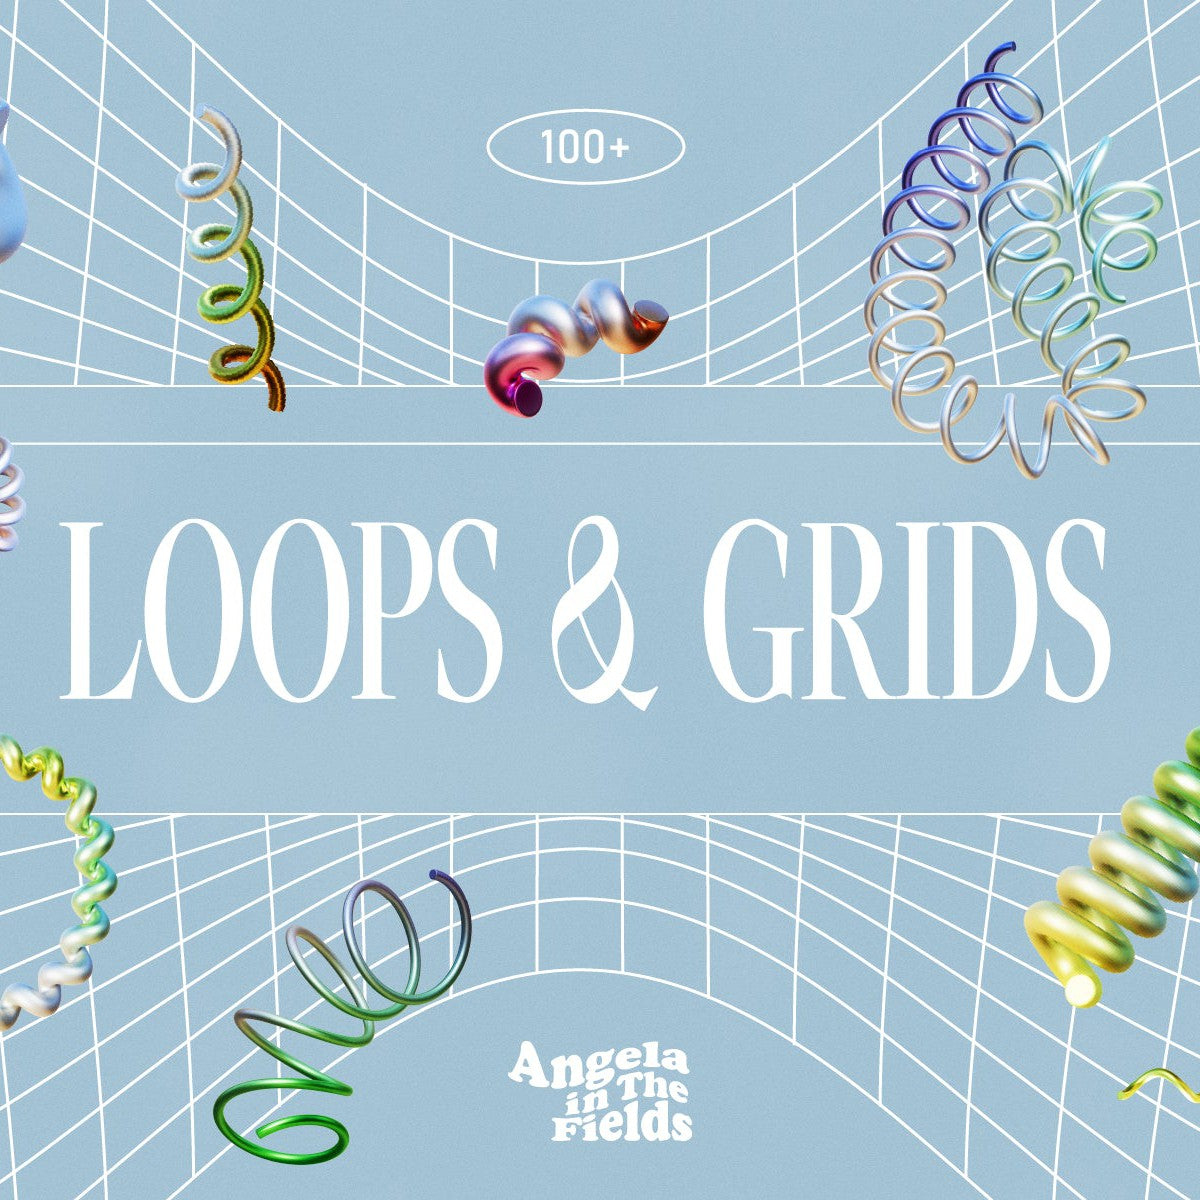 3D Loops & Grids